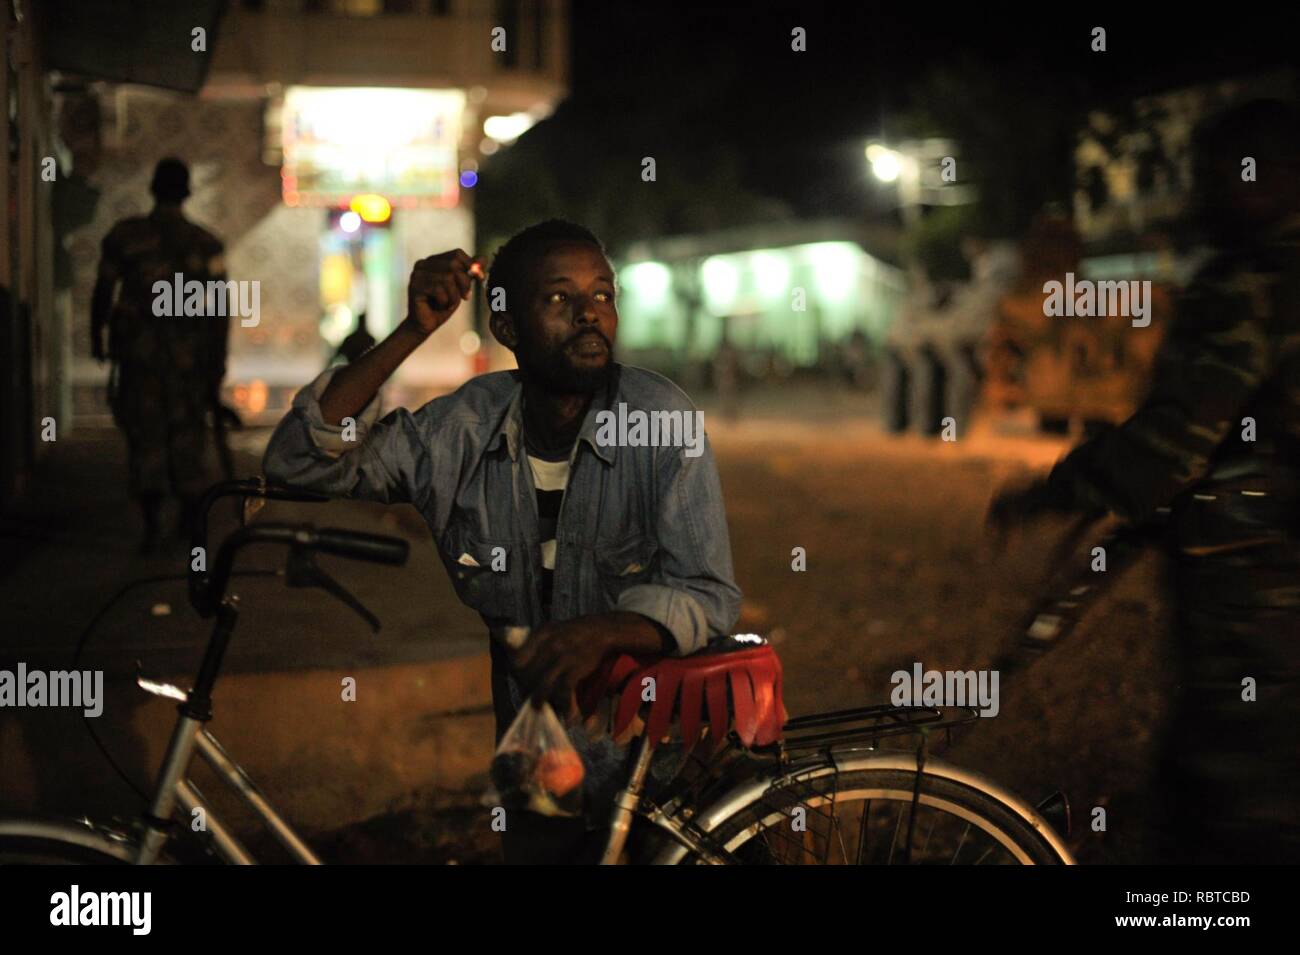 Un homme fume une cigarette pendant que les soldats éthiopiens, dans le cadre de la Mission de l'Union africaine en Somalie, la conduite d'une patrouille de nuit à travers la ville de Baidoa, la Somalie, le 22 juin. Photo de l'AMISOM - Tobin (14332224890). Banque D'Images